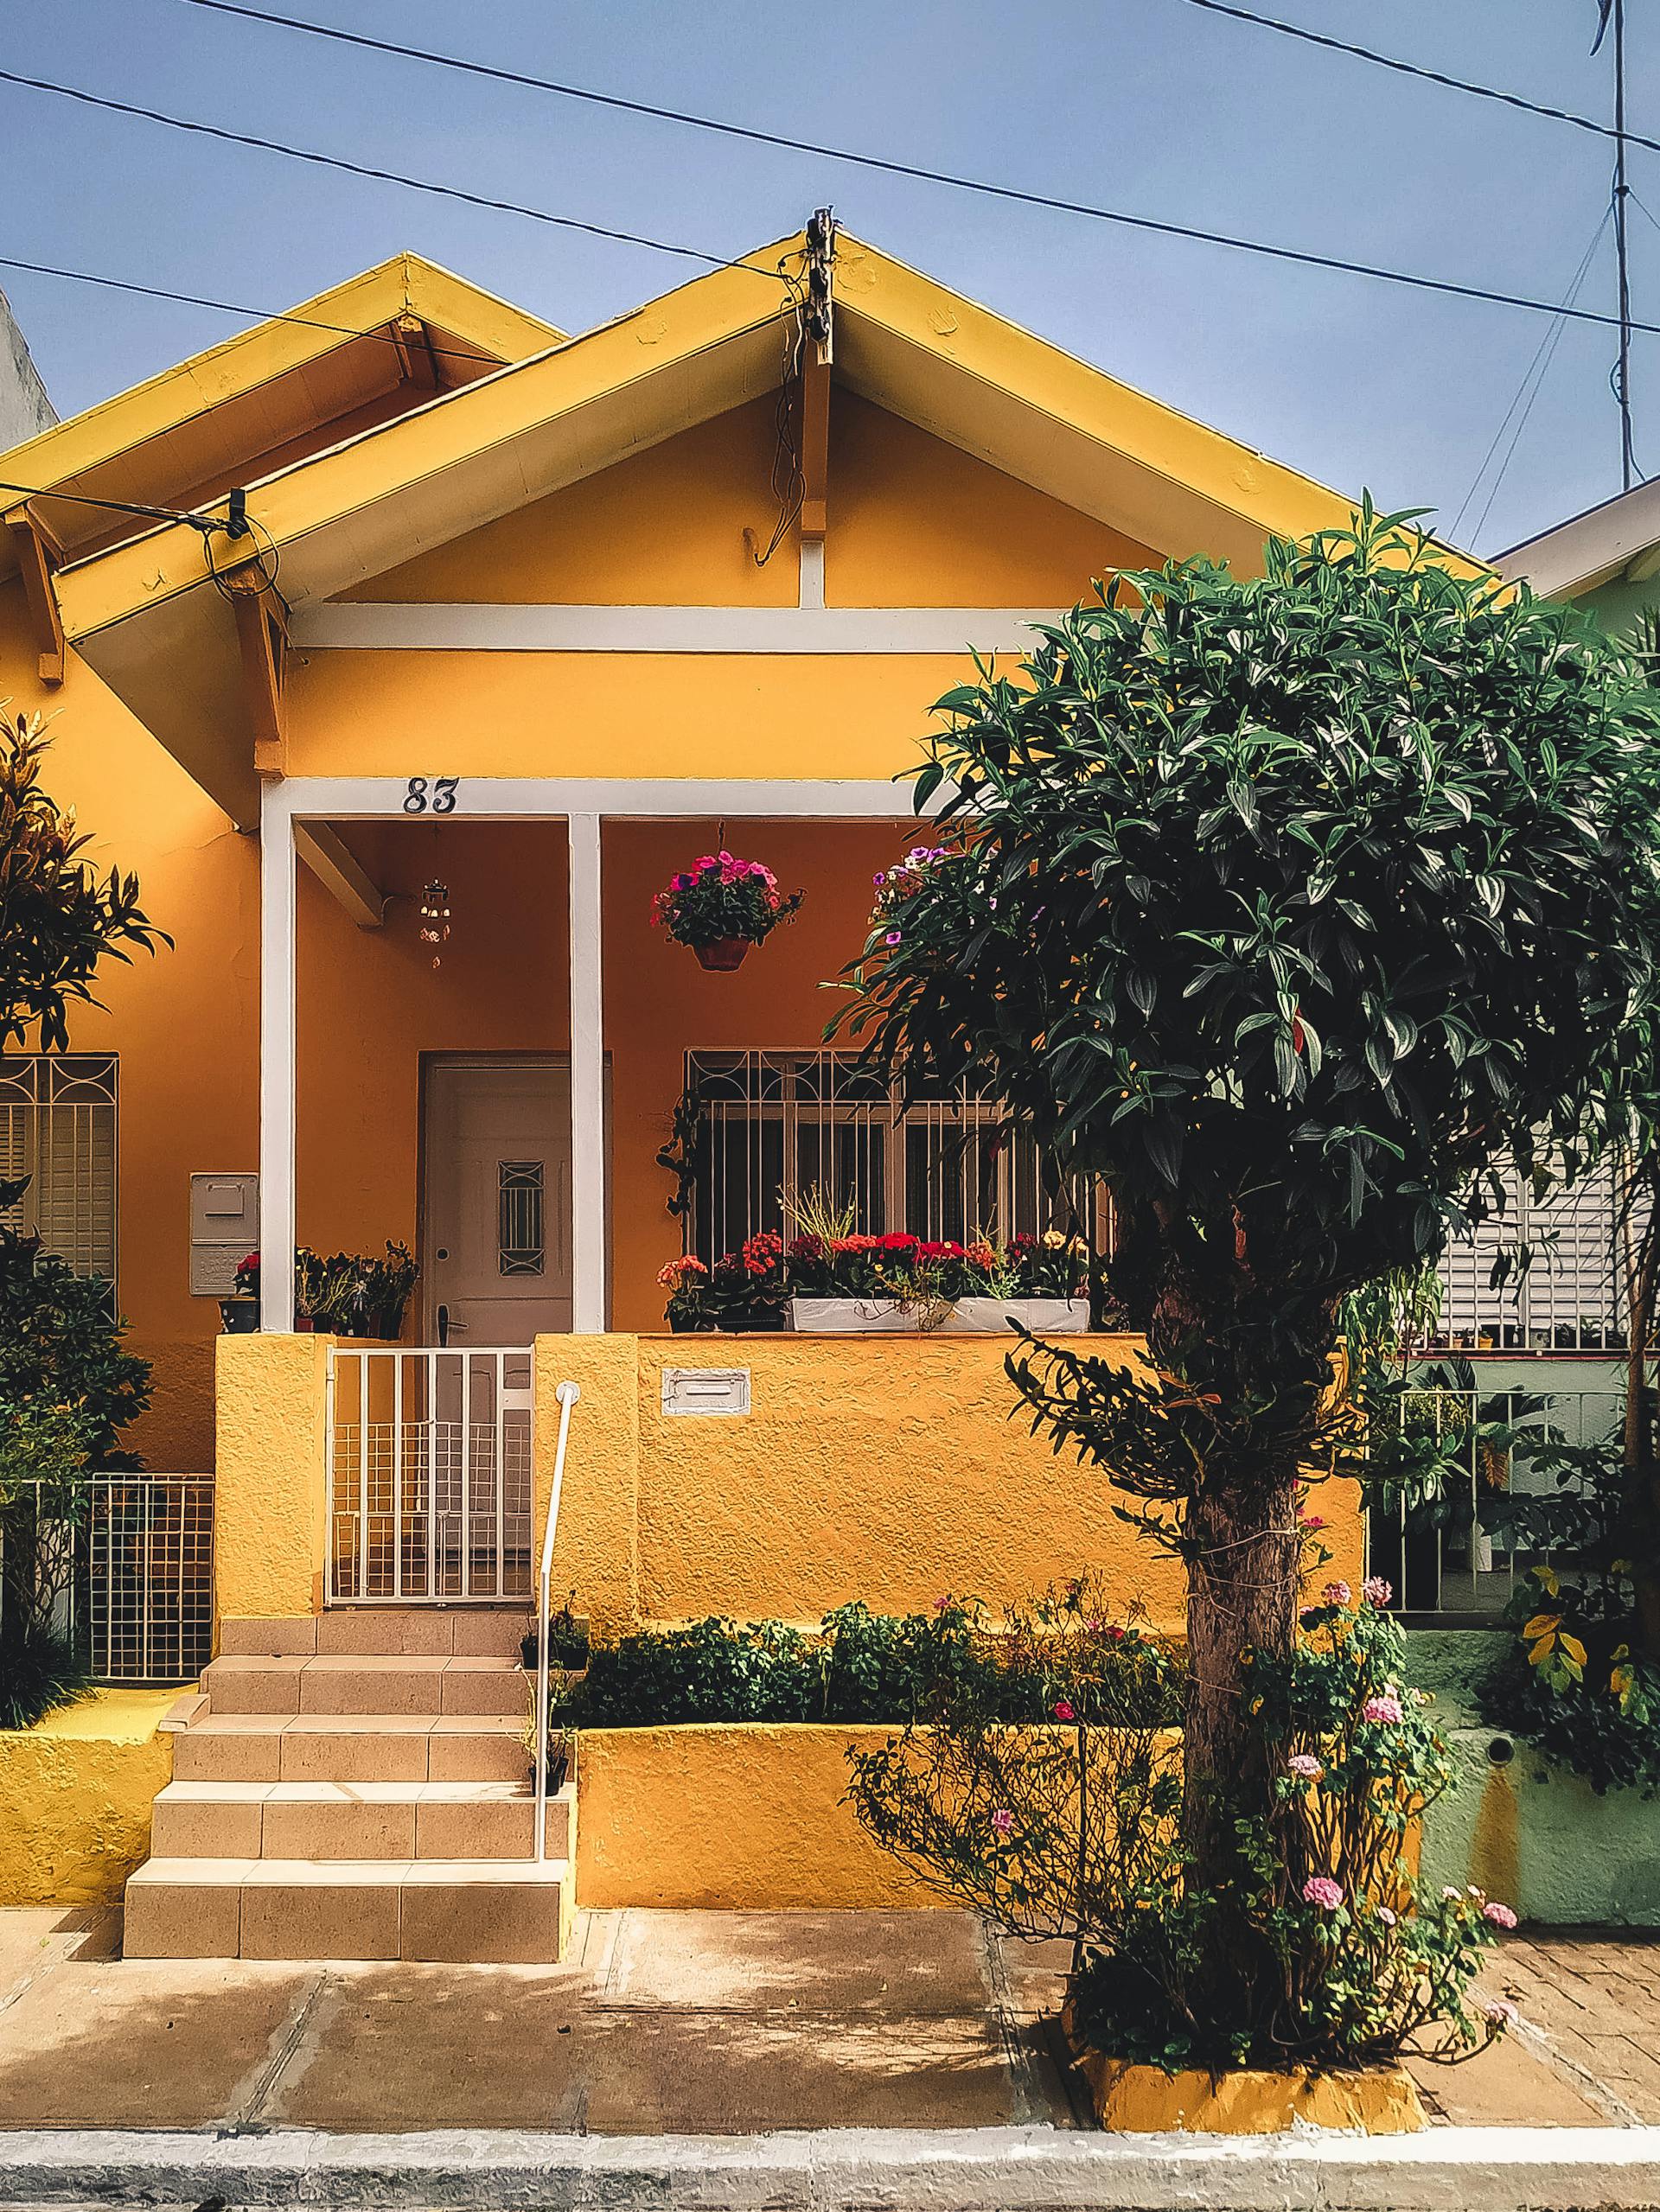 Ein gelbes Haus mit einem Baum davor | Quelle: Pexels